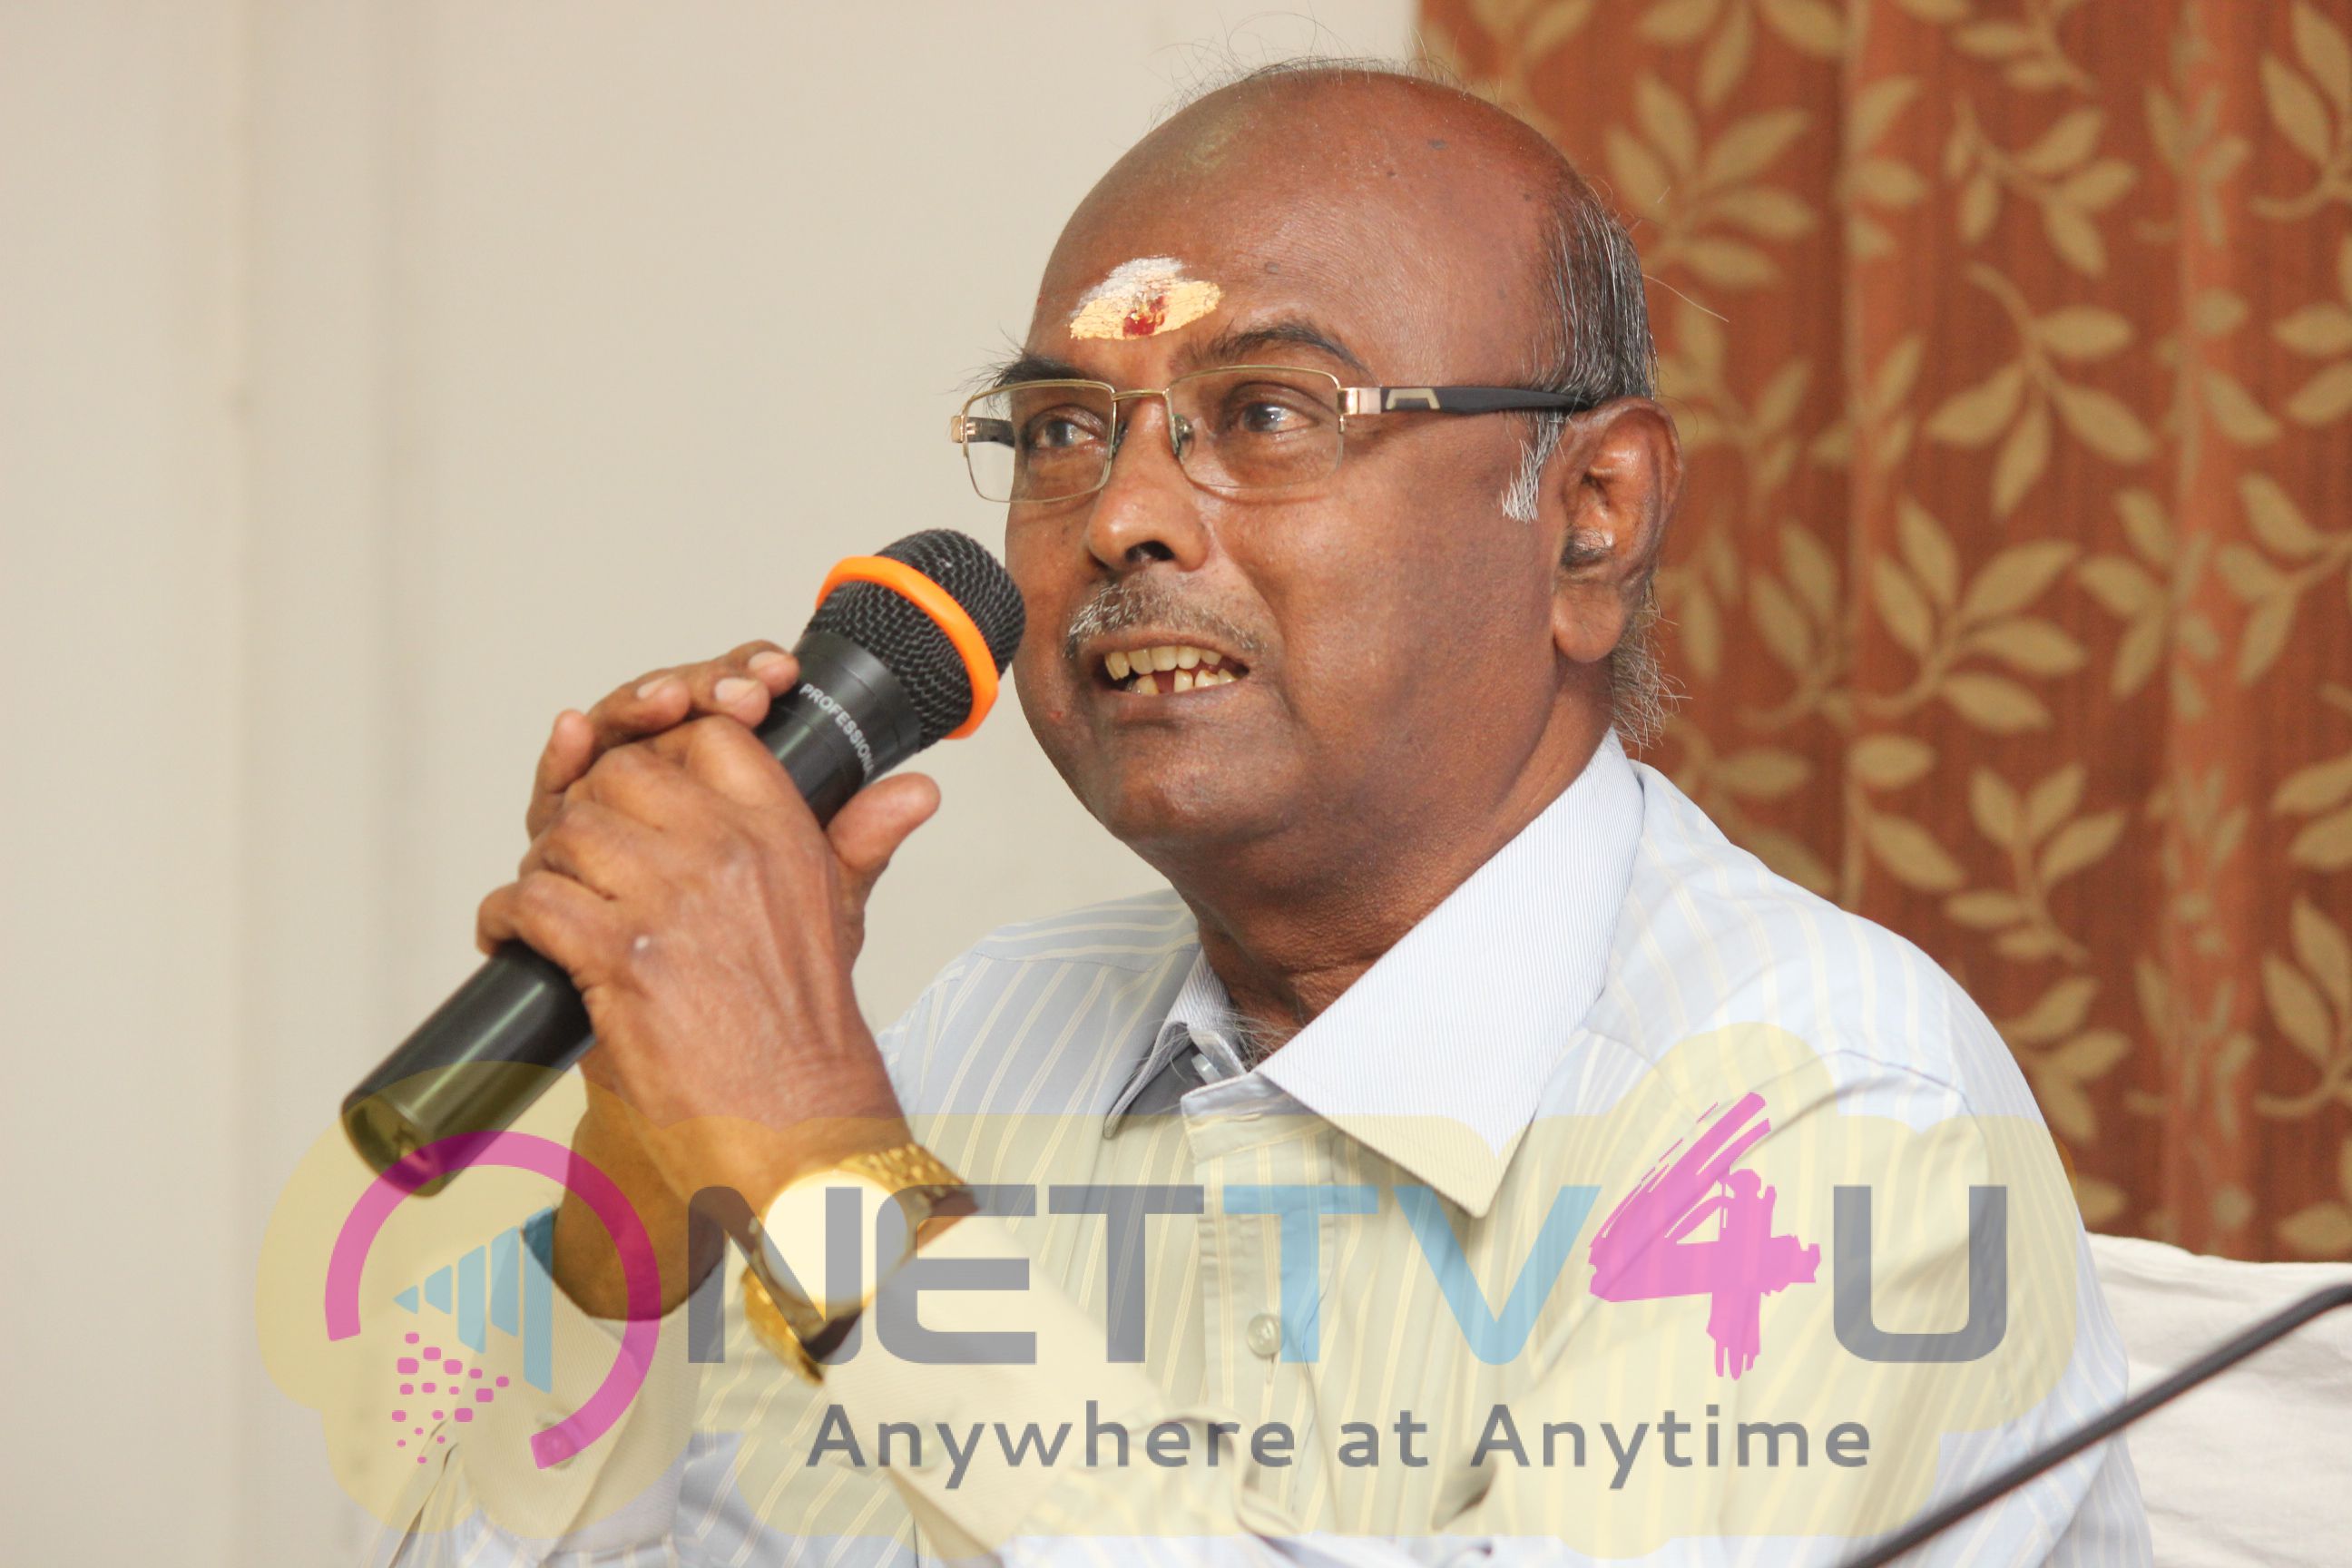 Kannada Film Festival Press Meet Stills Tamil Gallery